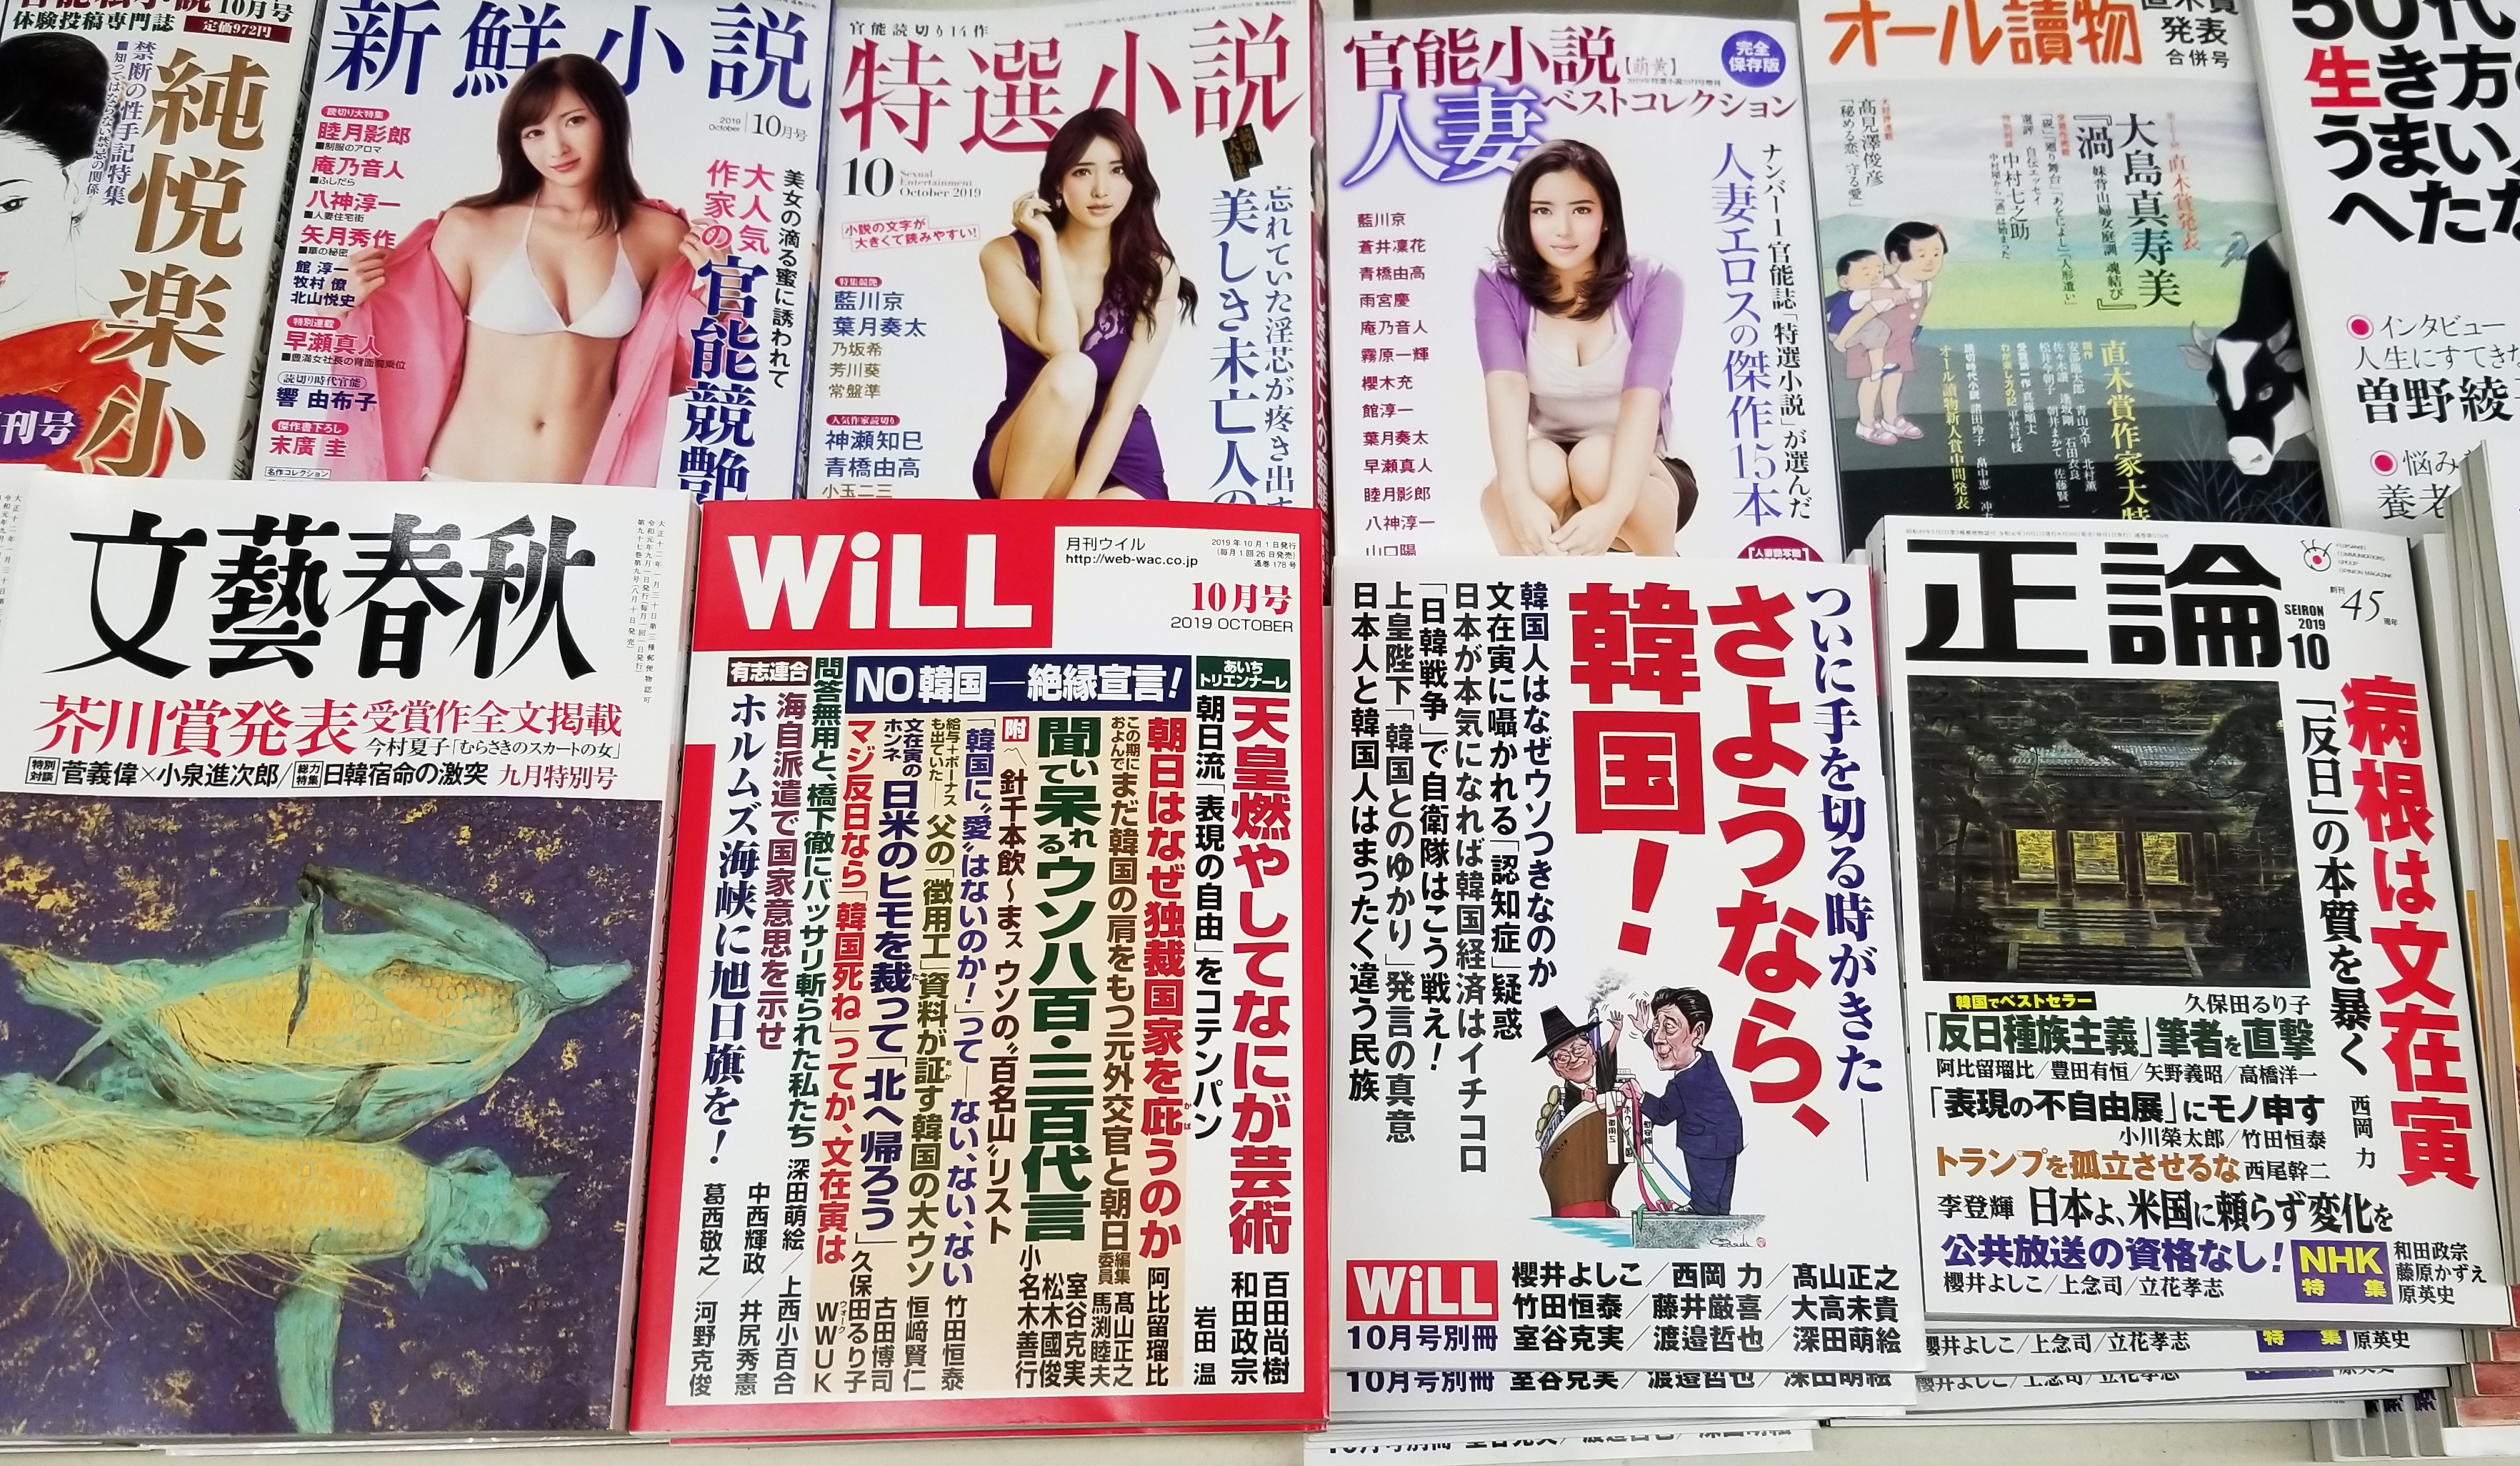 일본 도쿄의 대형 서점 입구에 진열돼 있는 우익 잡지들. 한국을 비방하고 매도하는 글들이 특집기사 형태로 실려 있다. 김태균 기자